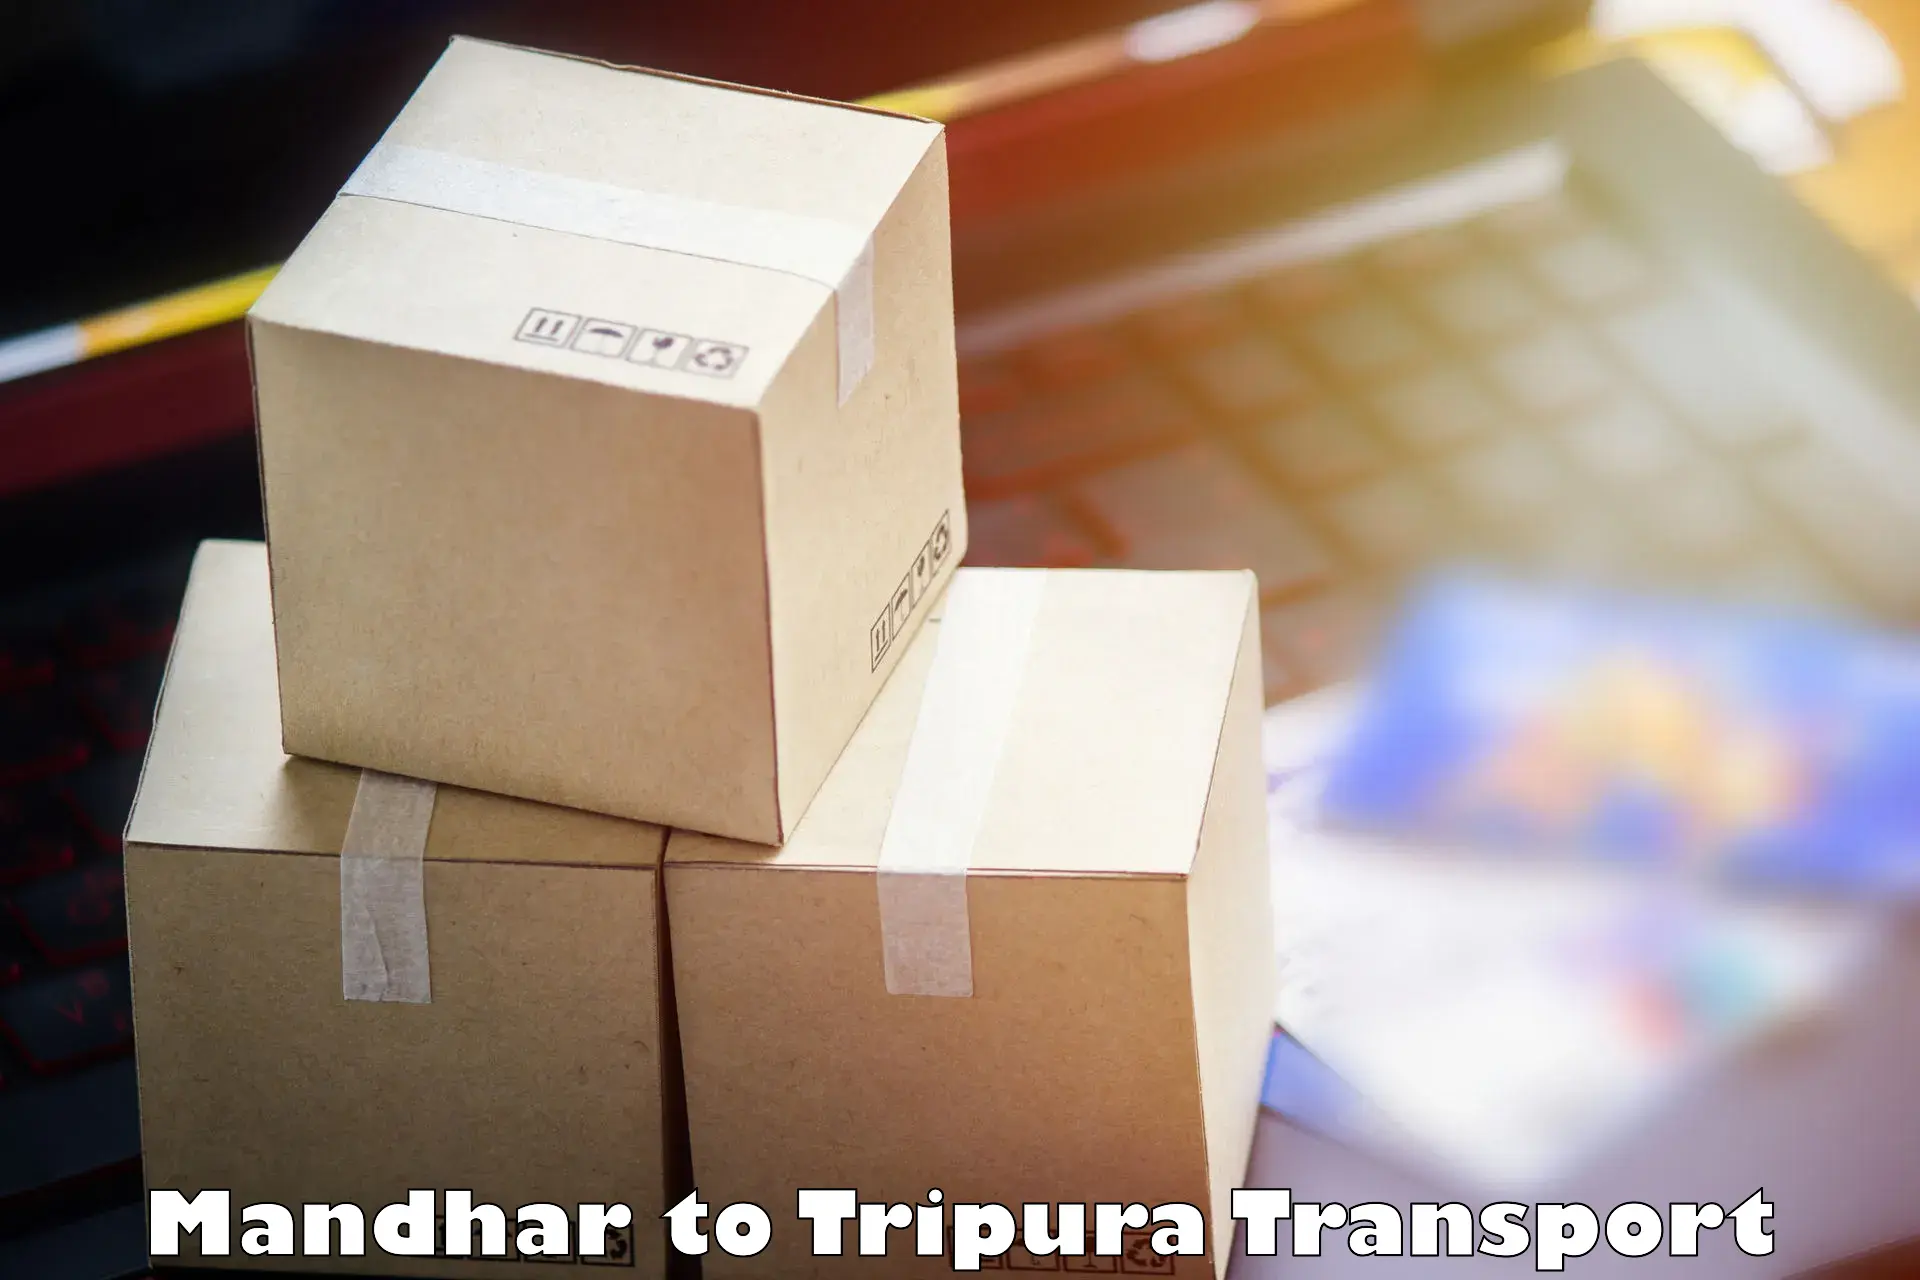 Furniture transport service Mandhar to South Tripura